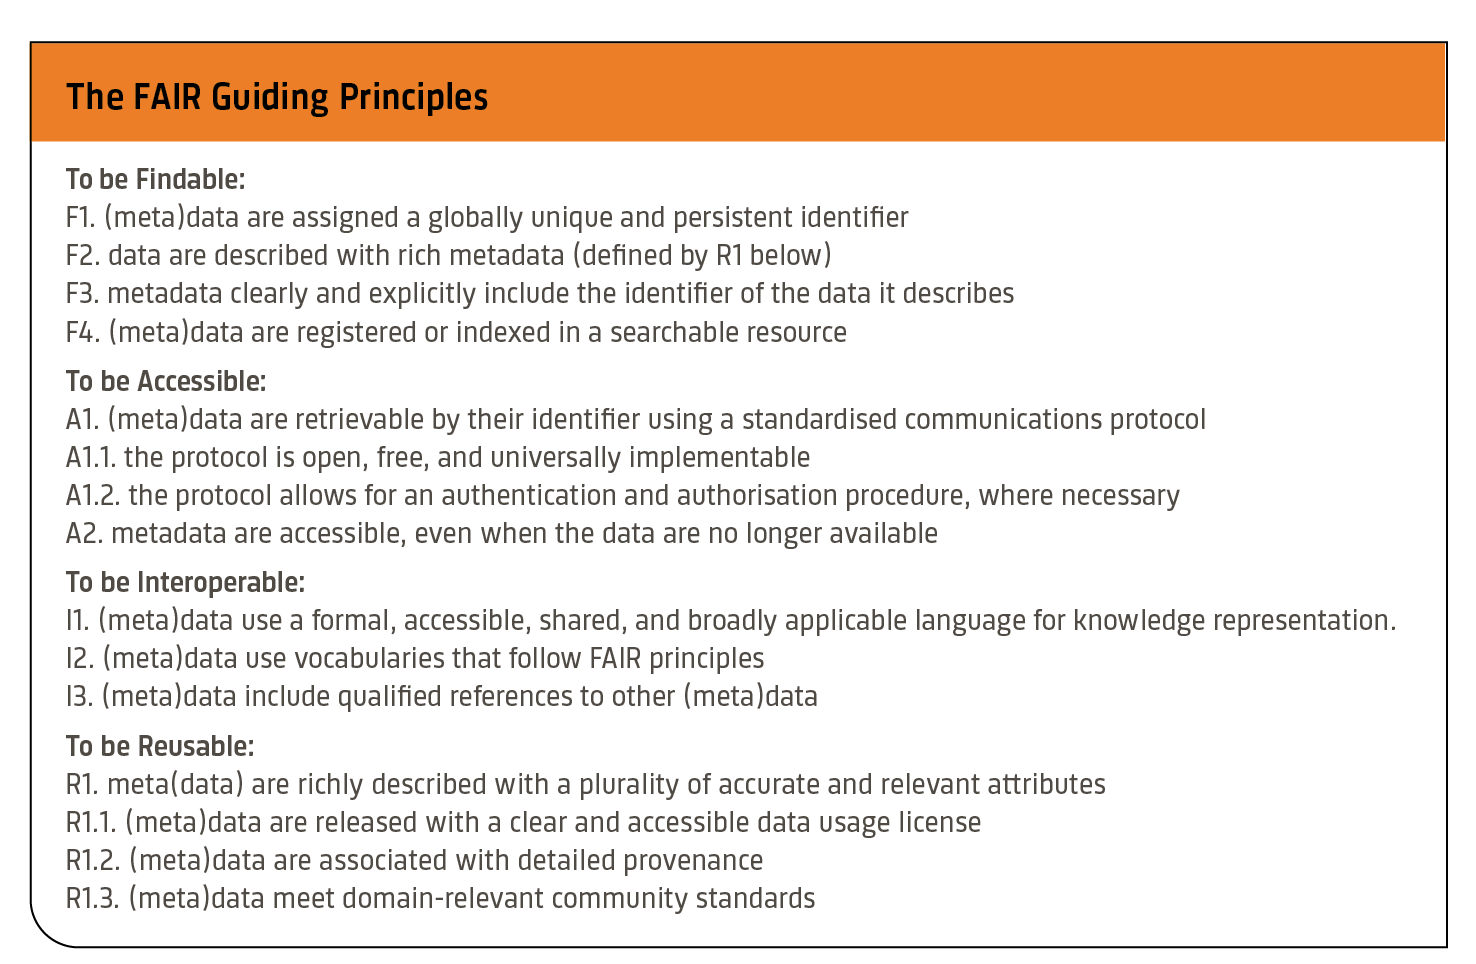 FAIR guiding principles